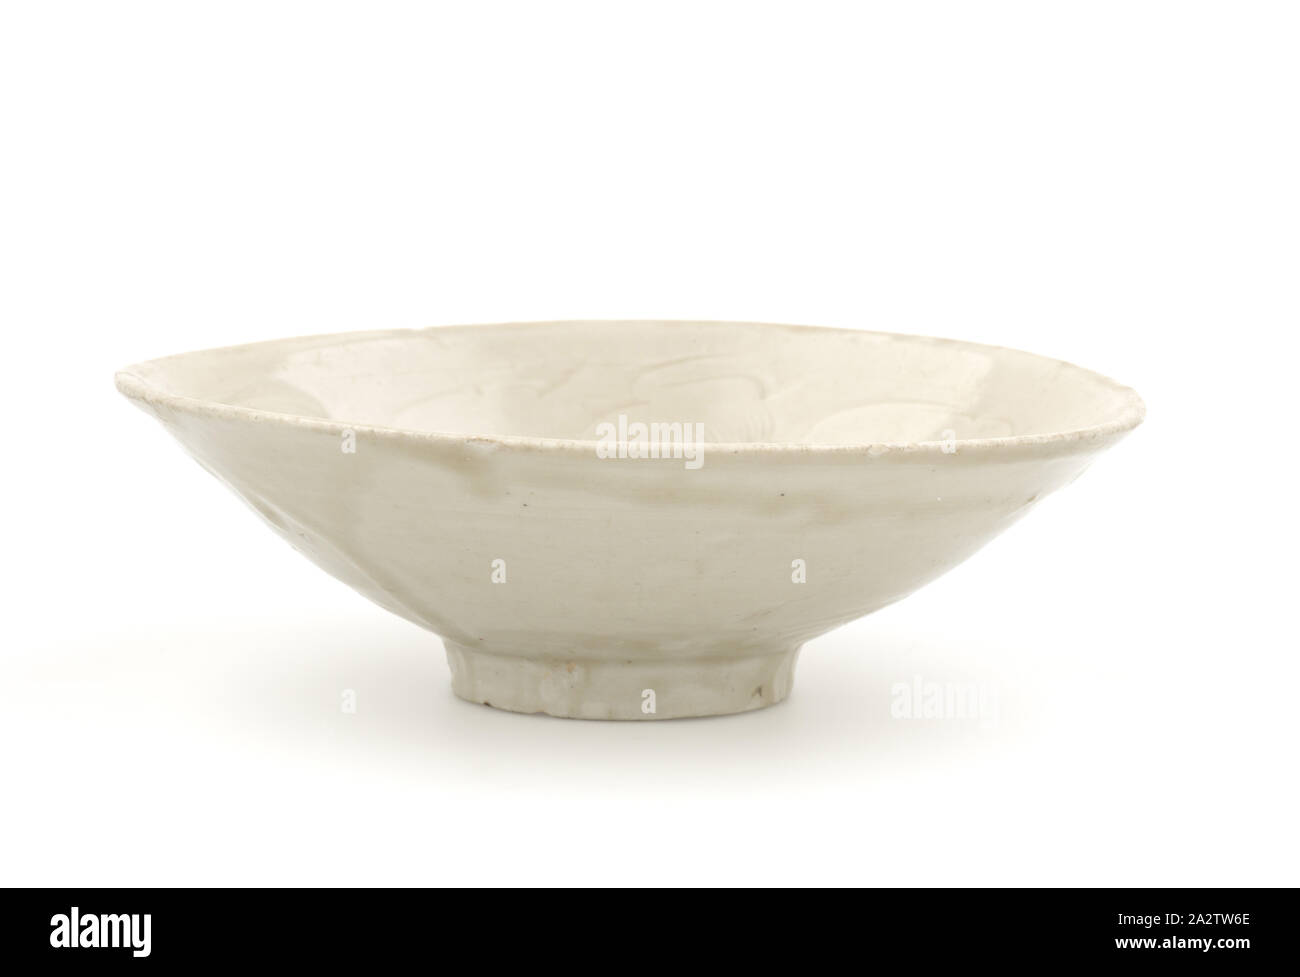 bowl, Grey Glaze, 2-1/8 x 6-11/16 in., Asian Art Stock Photo